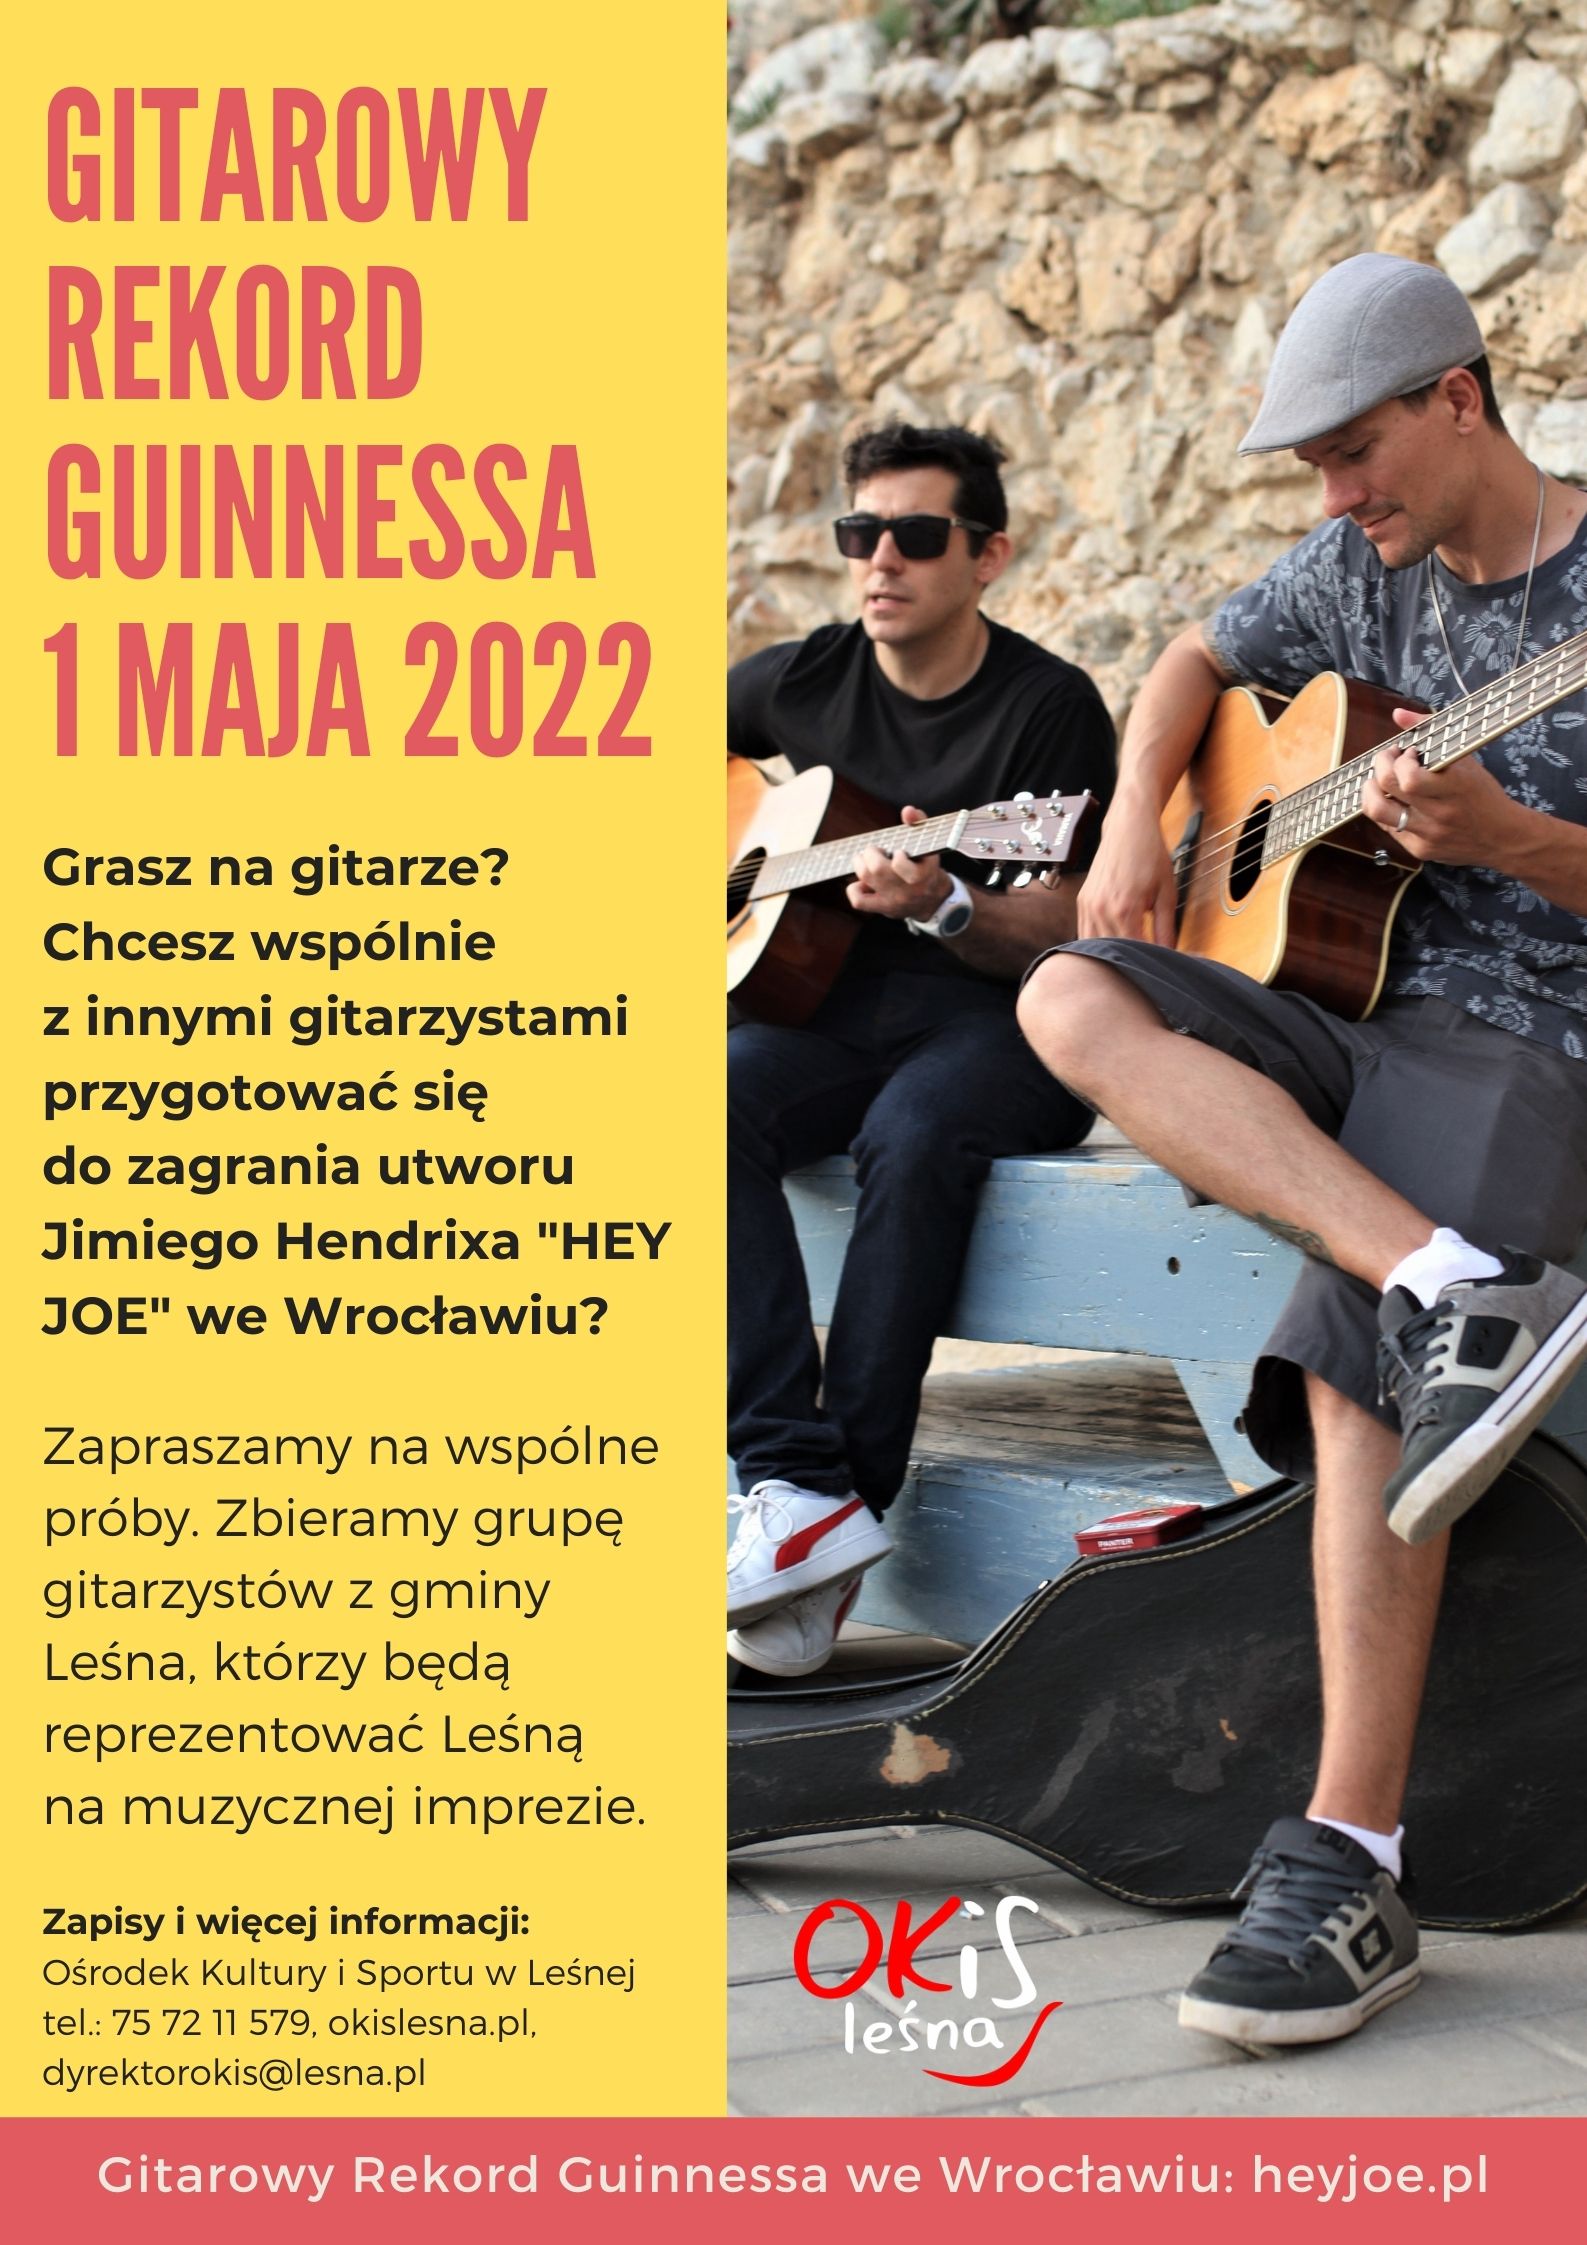 Gitarowy Rekord Guinnesa we Wrocławiu heyjoe.pl (2).jpg